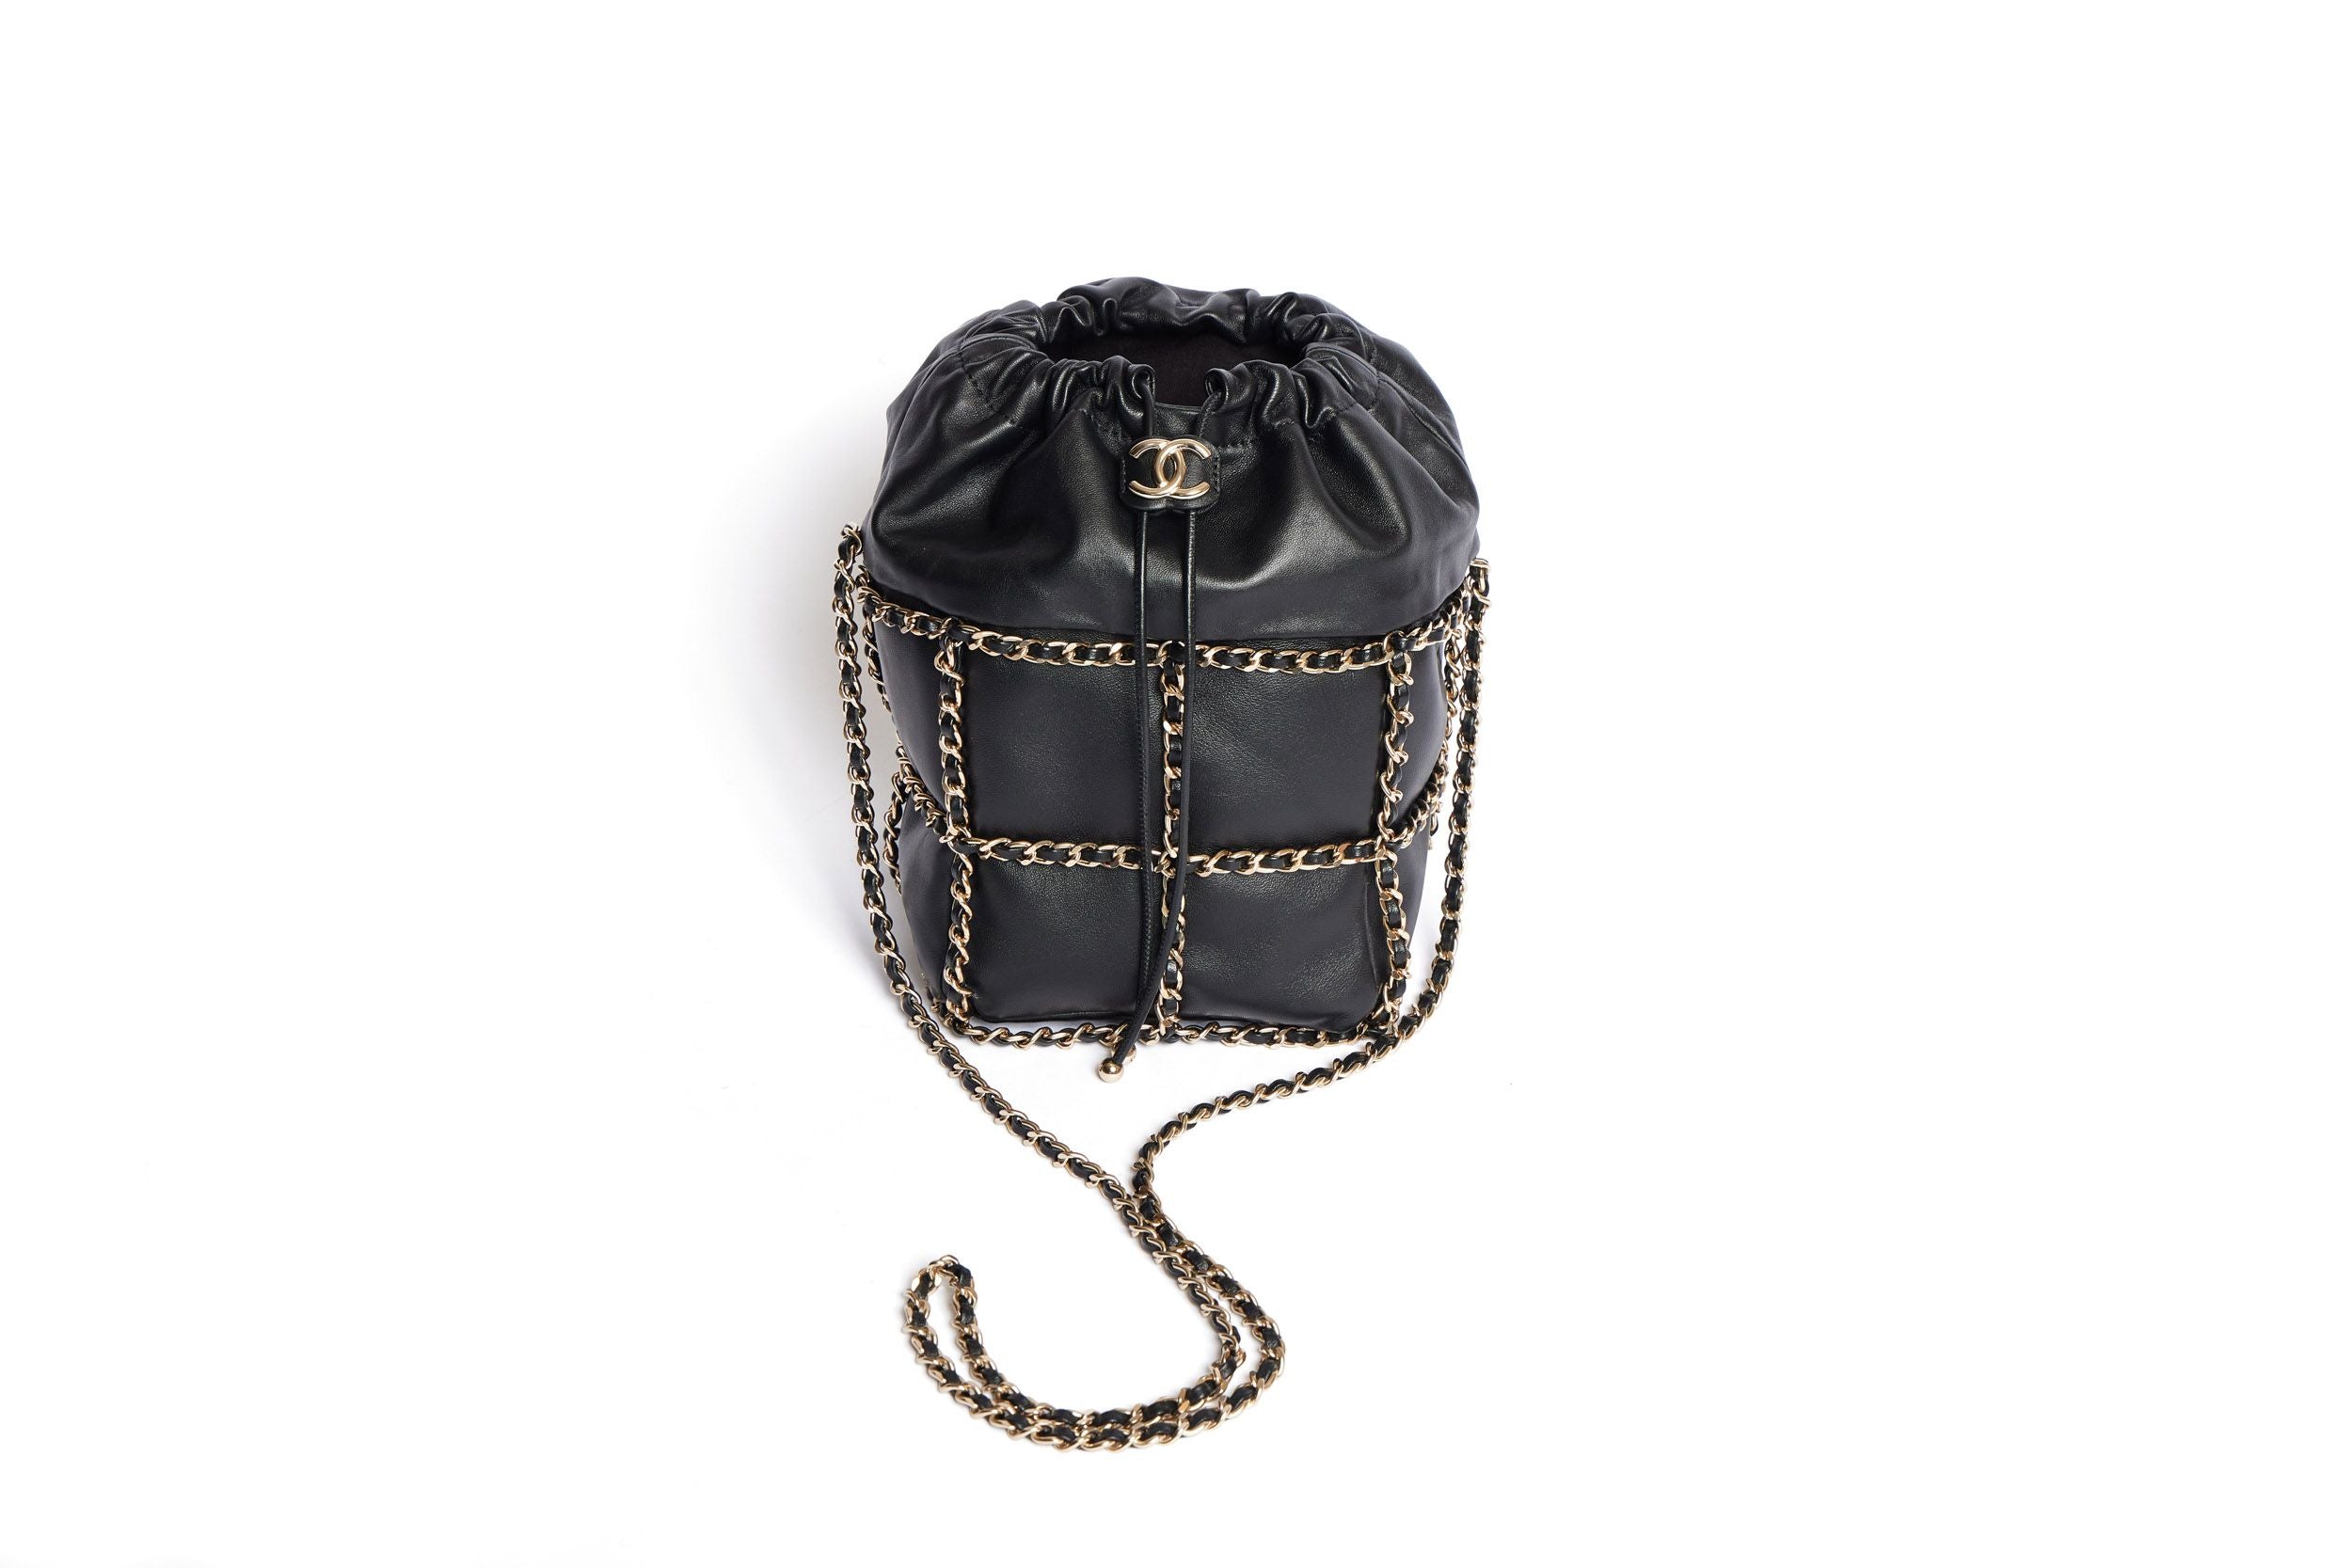 Chanel Bucket Gabrielle Small Leather Crossbody Bag! - New Neu